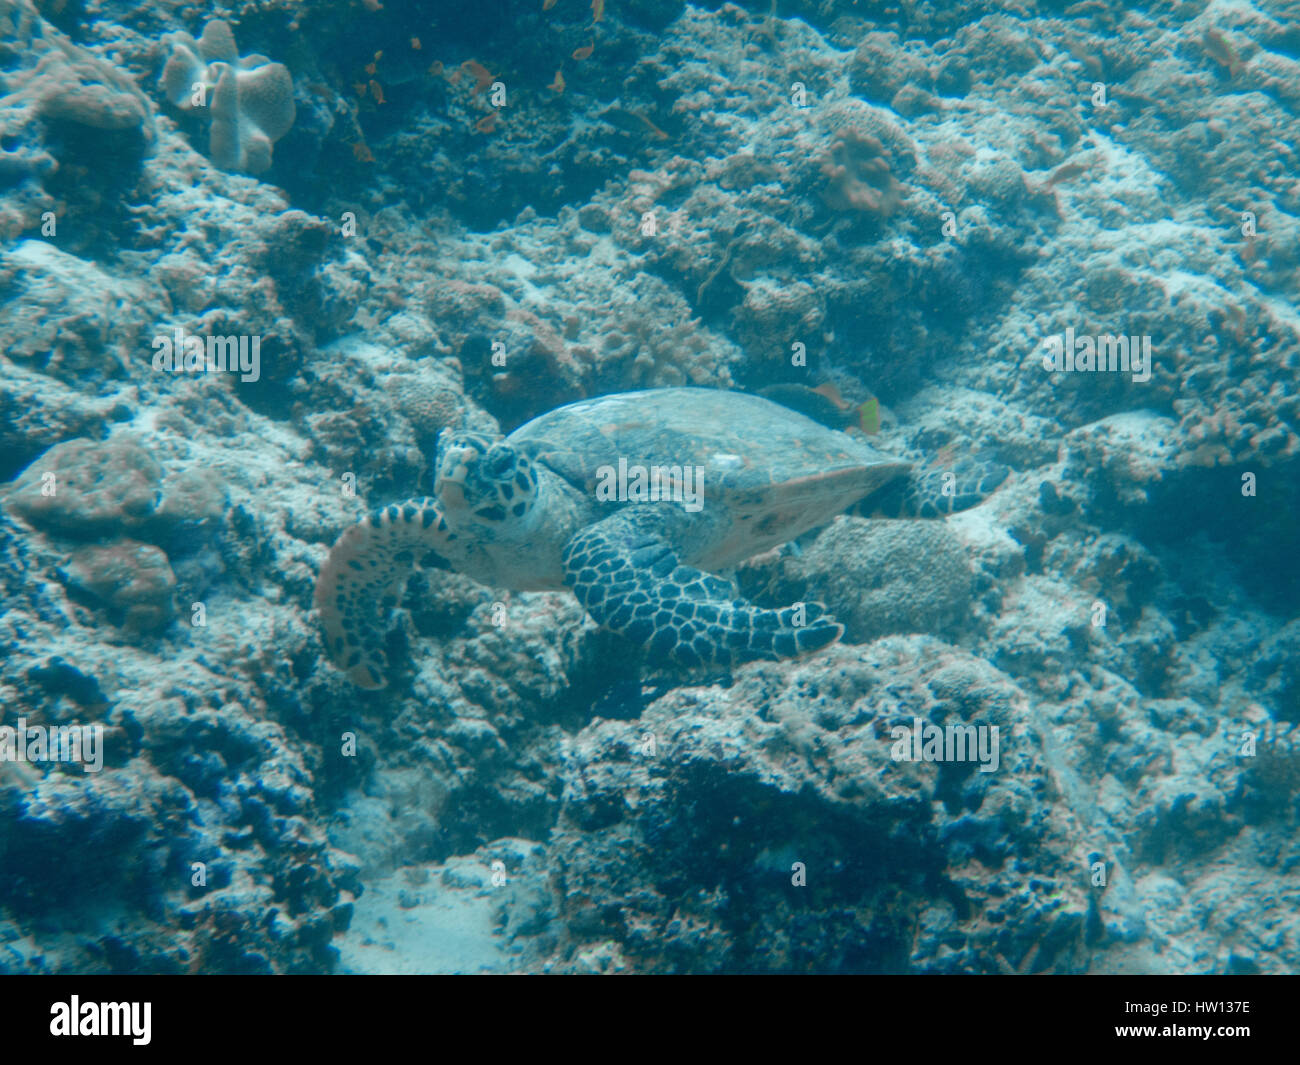 Maldive Rangali Island. Conrad Hilton Resort. Scuba diving. Foto Stock